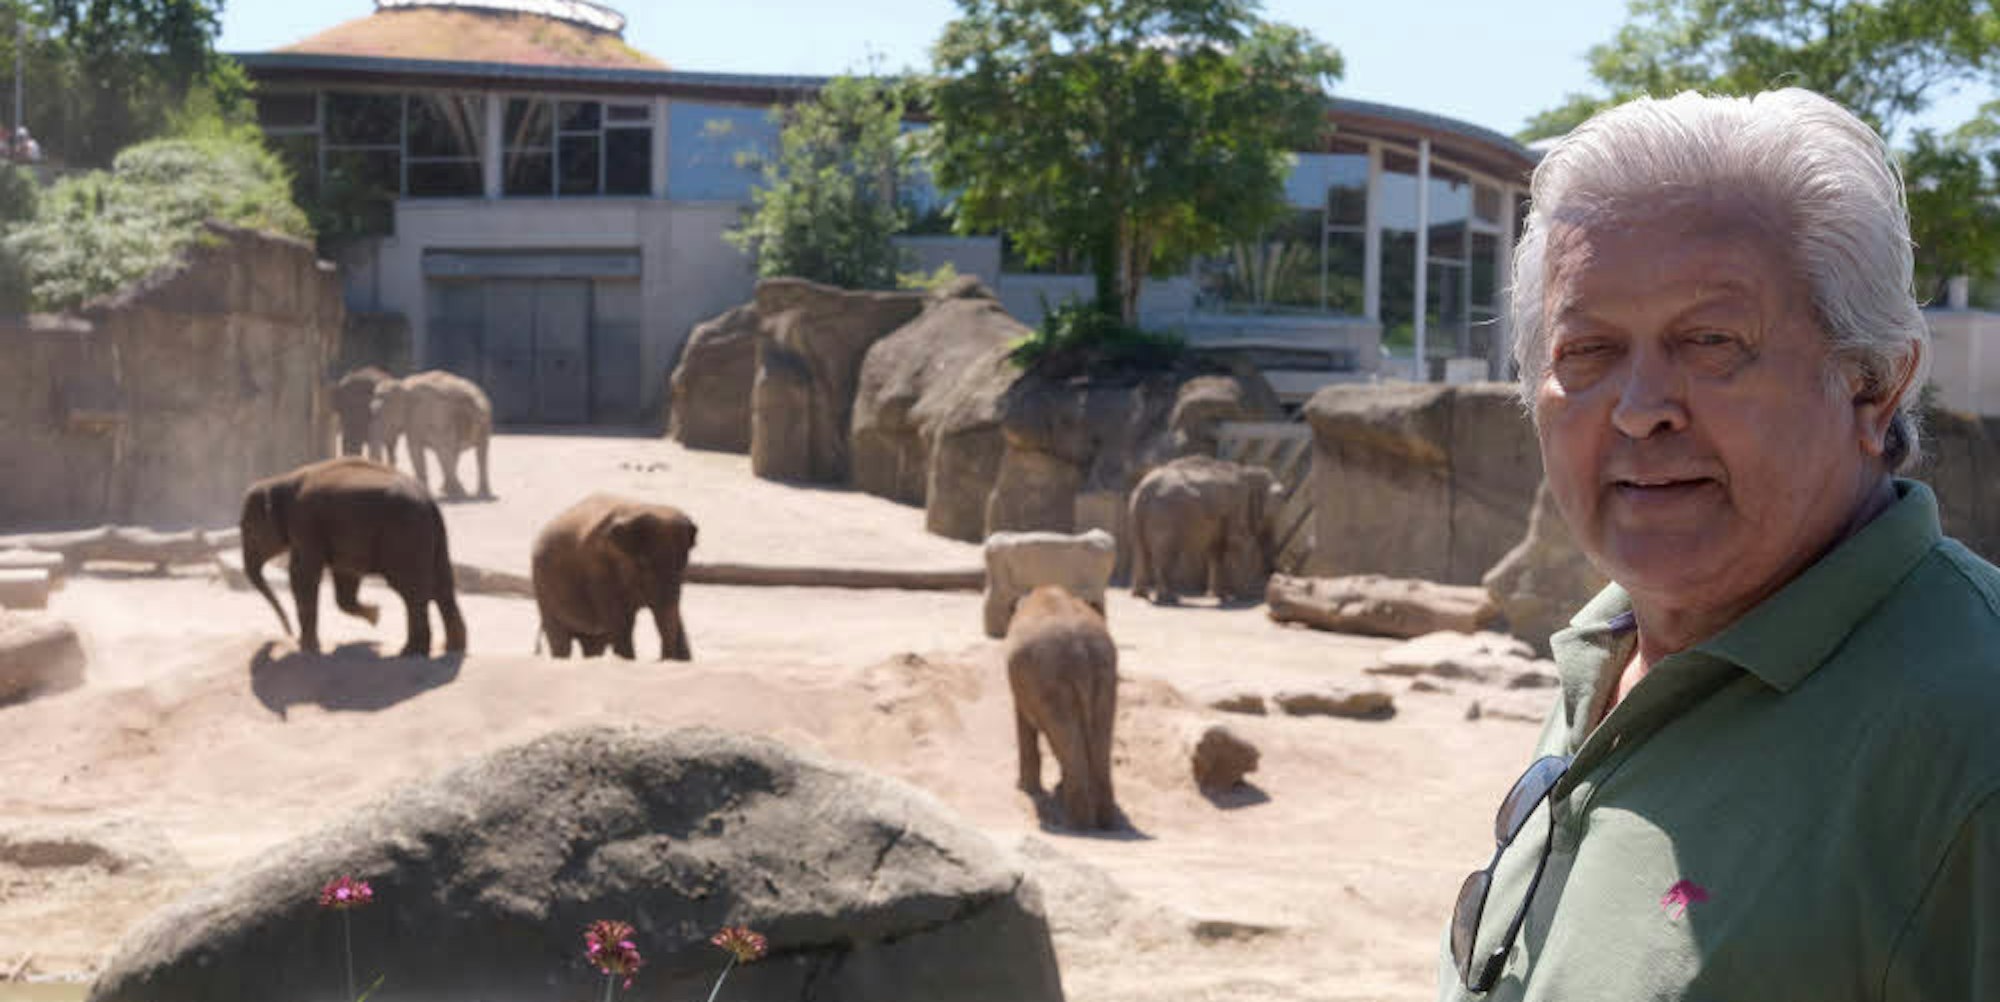 Lieblingsplatz am Elefantenpark: Von hier aus hat Brian Batstone einen Überblick über die Anlage, im Vordergrund spielen die jüngsten Elefanten in einem Sandhaufen.